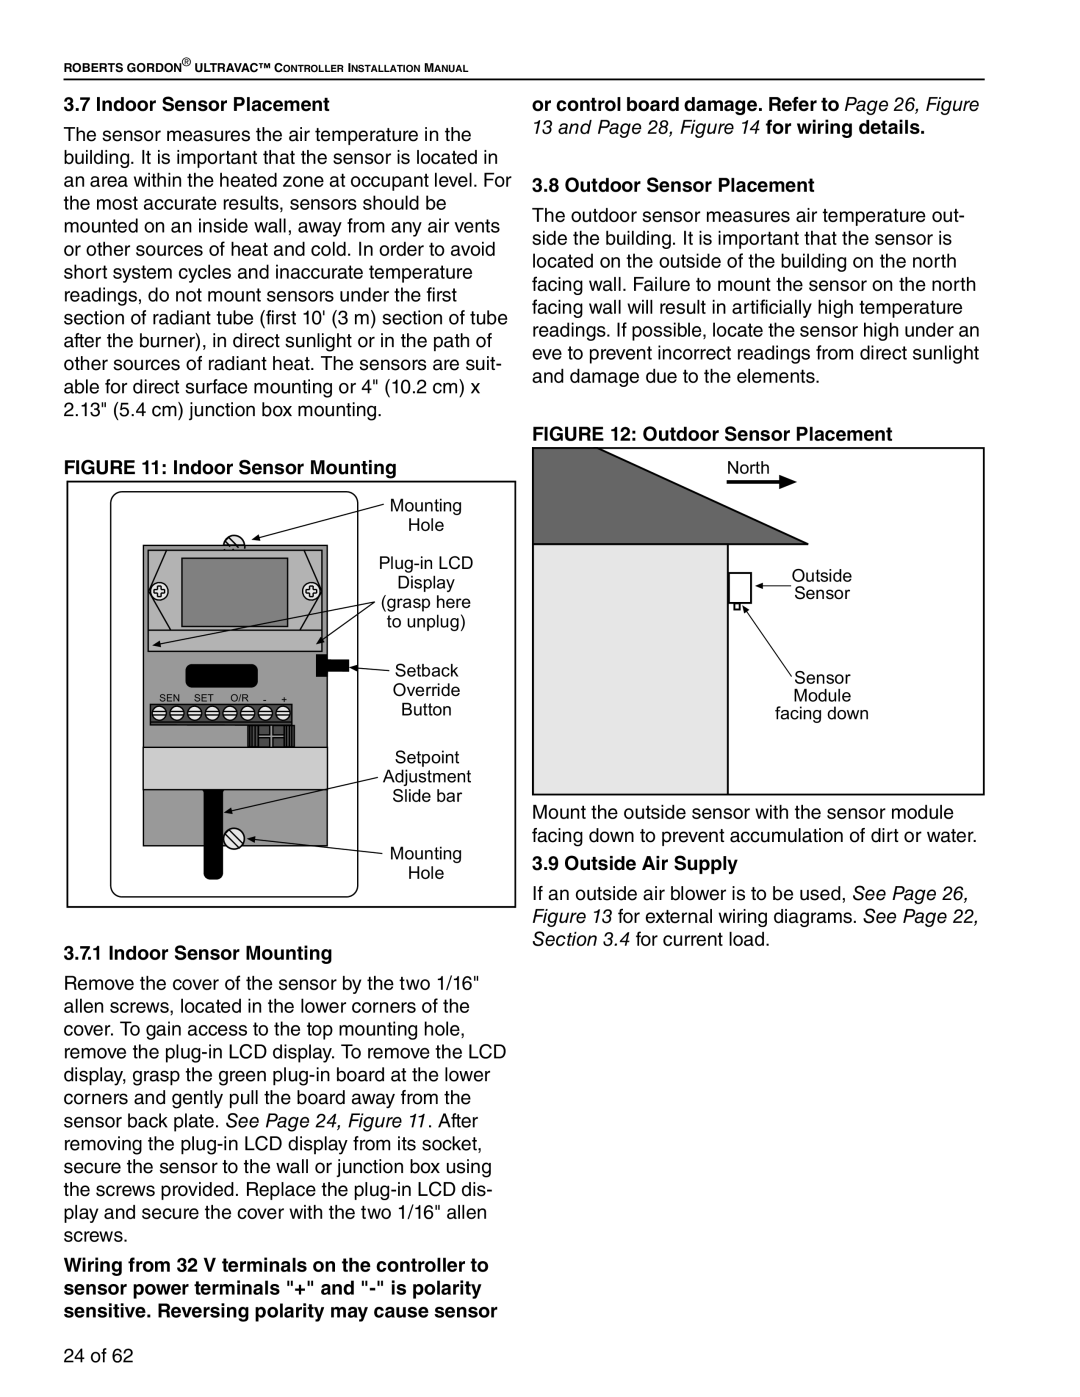 Roberts Gorden 10081601NA Rev H 12/11 Indoor Sensor Placement, Indoor Sensor Mounting, Outdoor Sensor Placement 